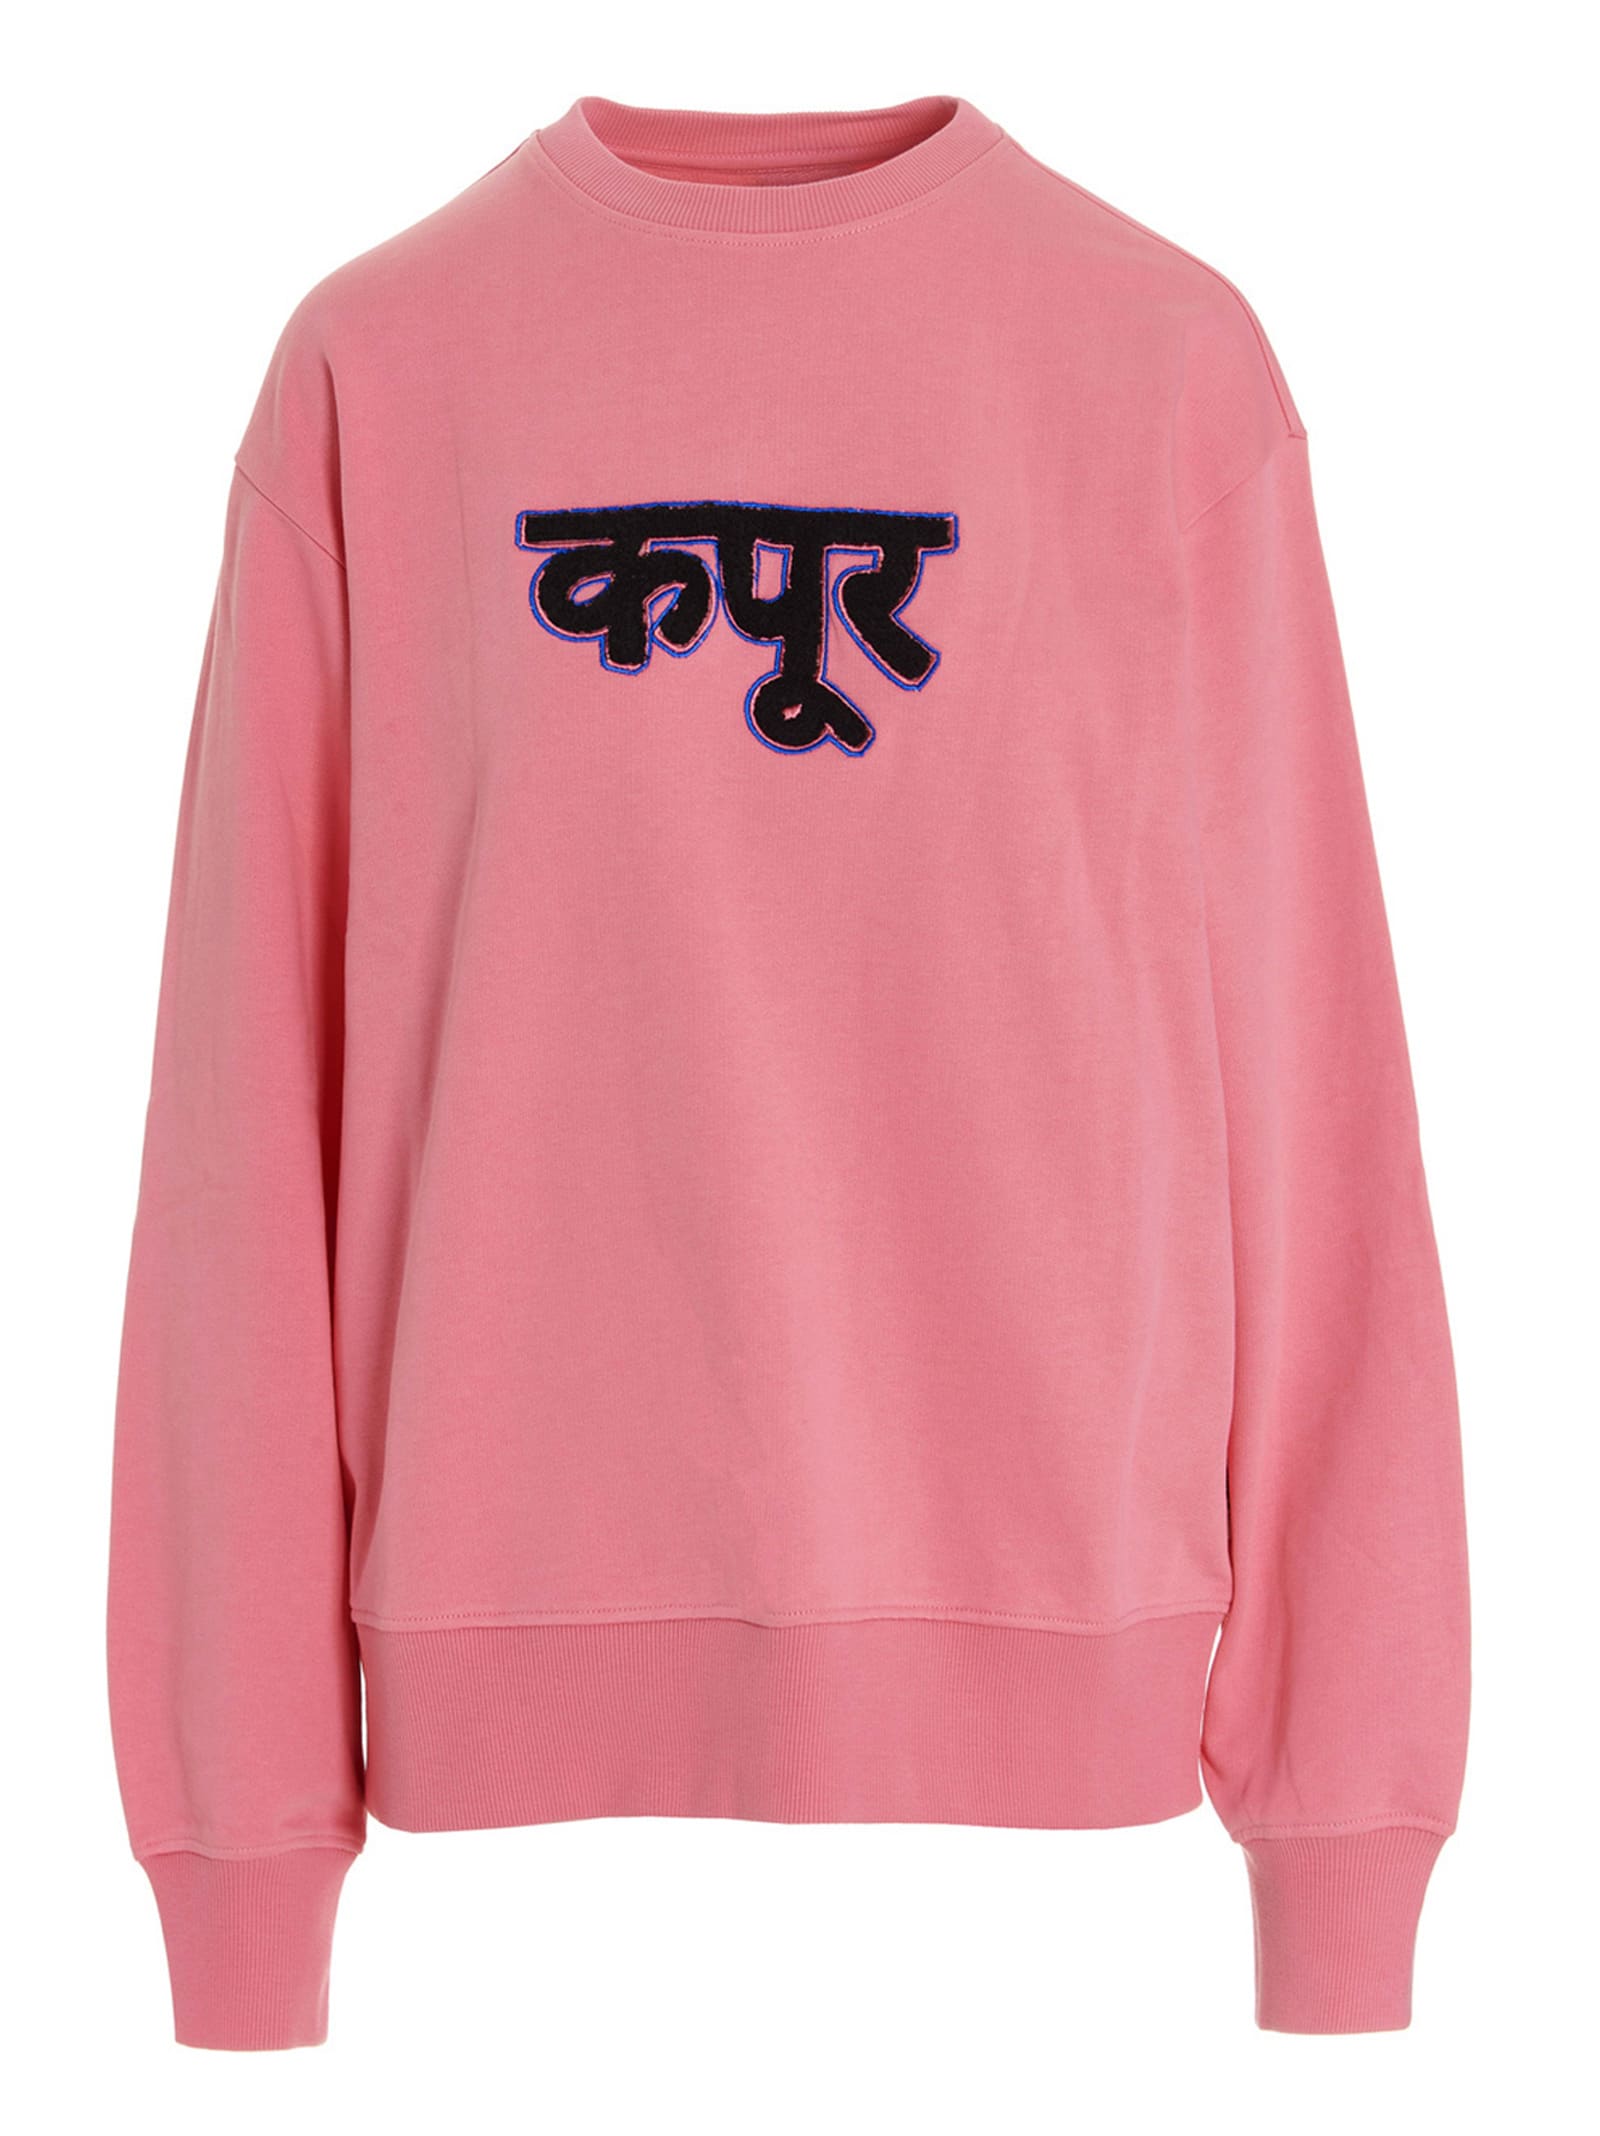 Dhruv Kapoor Sweatshirt